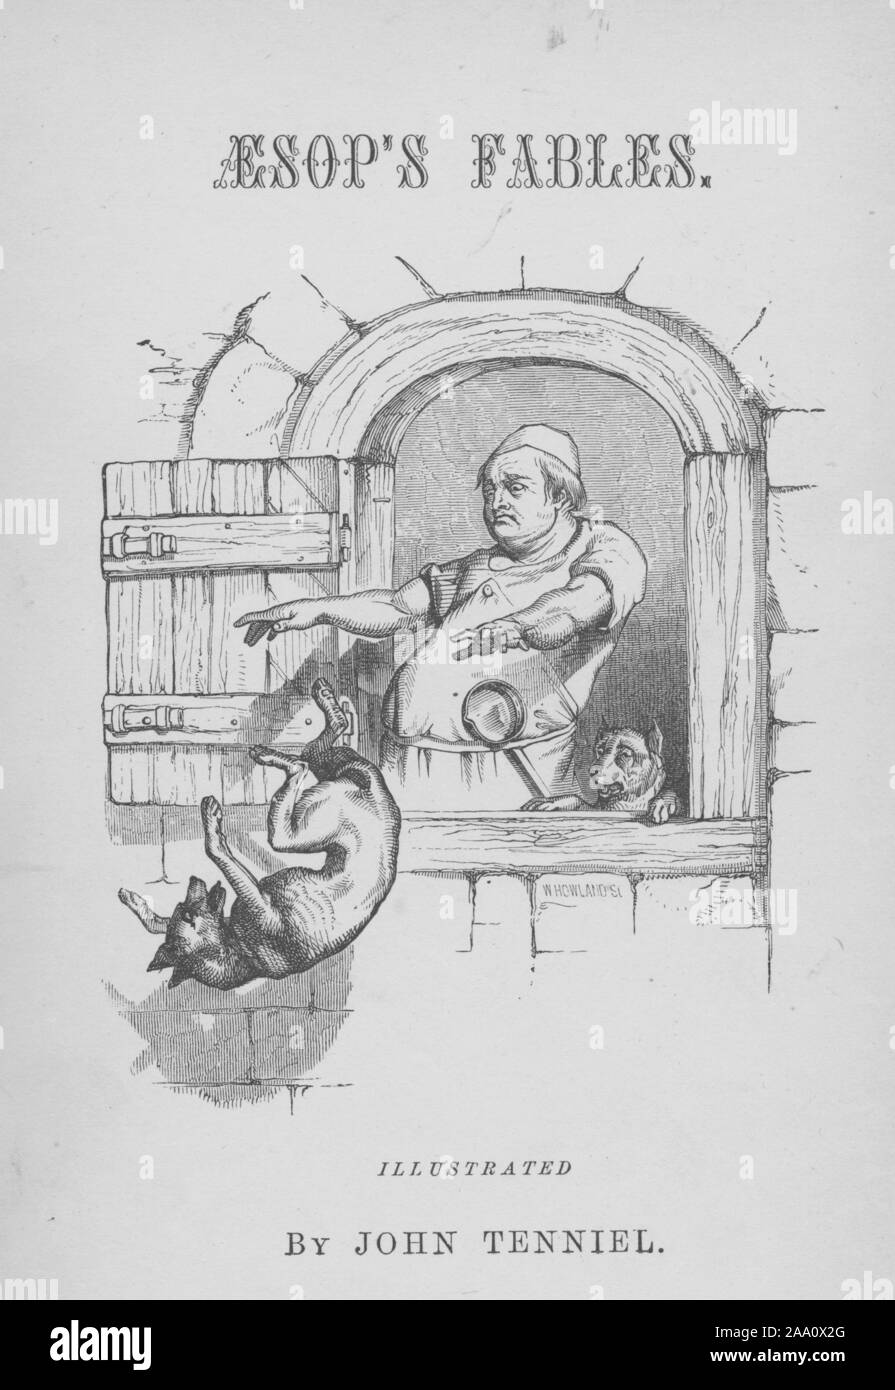 Illustration monochrome de la page de titre du livre 'Aesop's Fables' par l'auteur Le révérend Thomas James, doté d''un cuisinier de jeter un chien à la fenêtre, illustré par John Tenniel, gravée par William Howland, publié par Collins et frère, 1848. À partir de la Bibliothèque publique de New York. () Banque D'Images